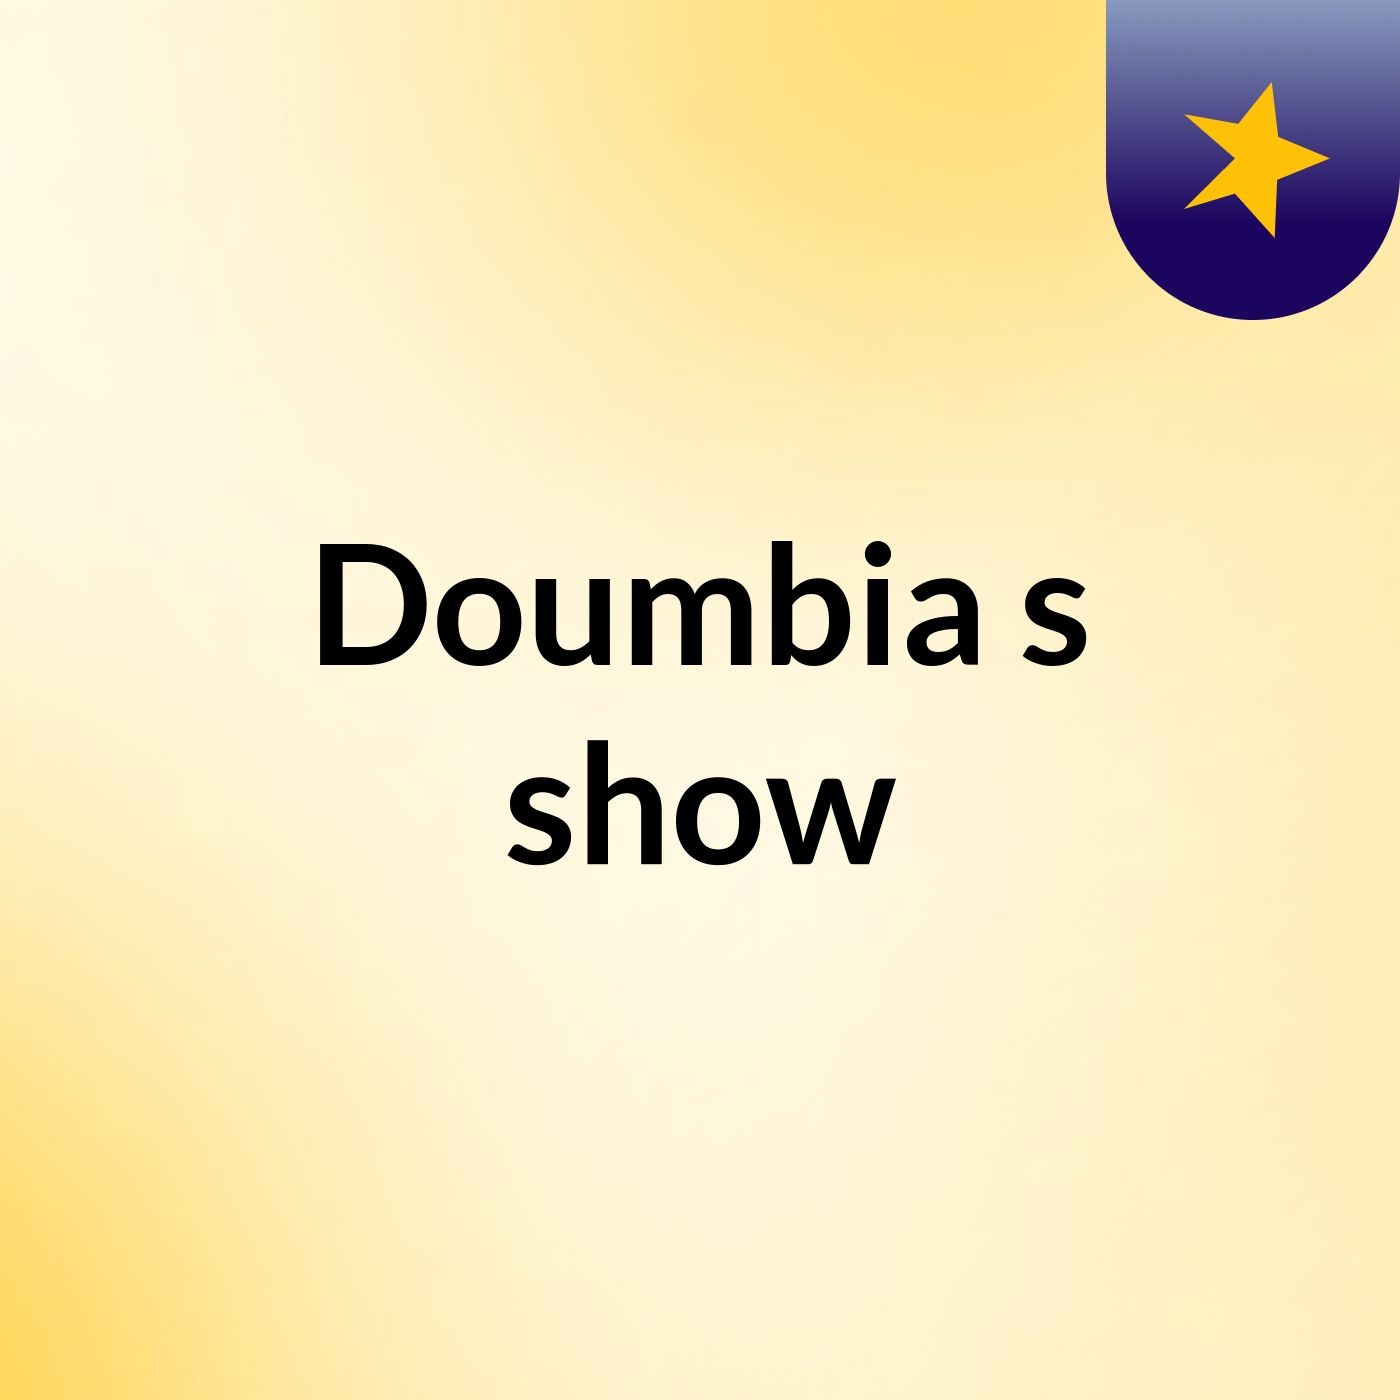 Doumbia's show